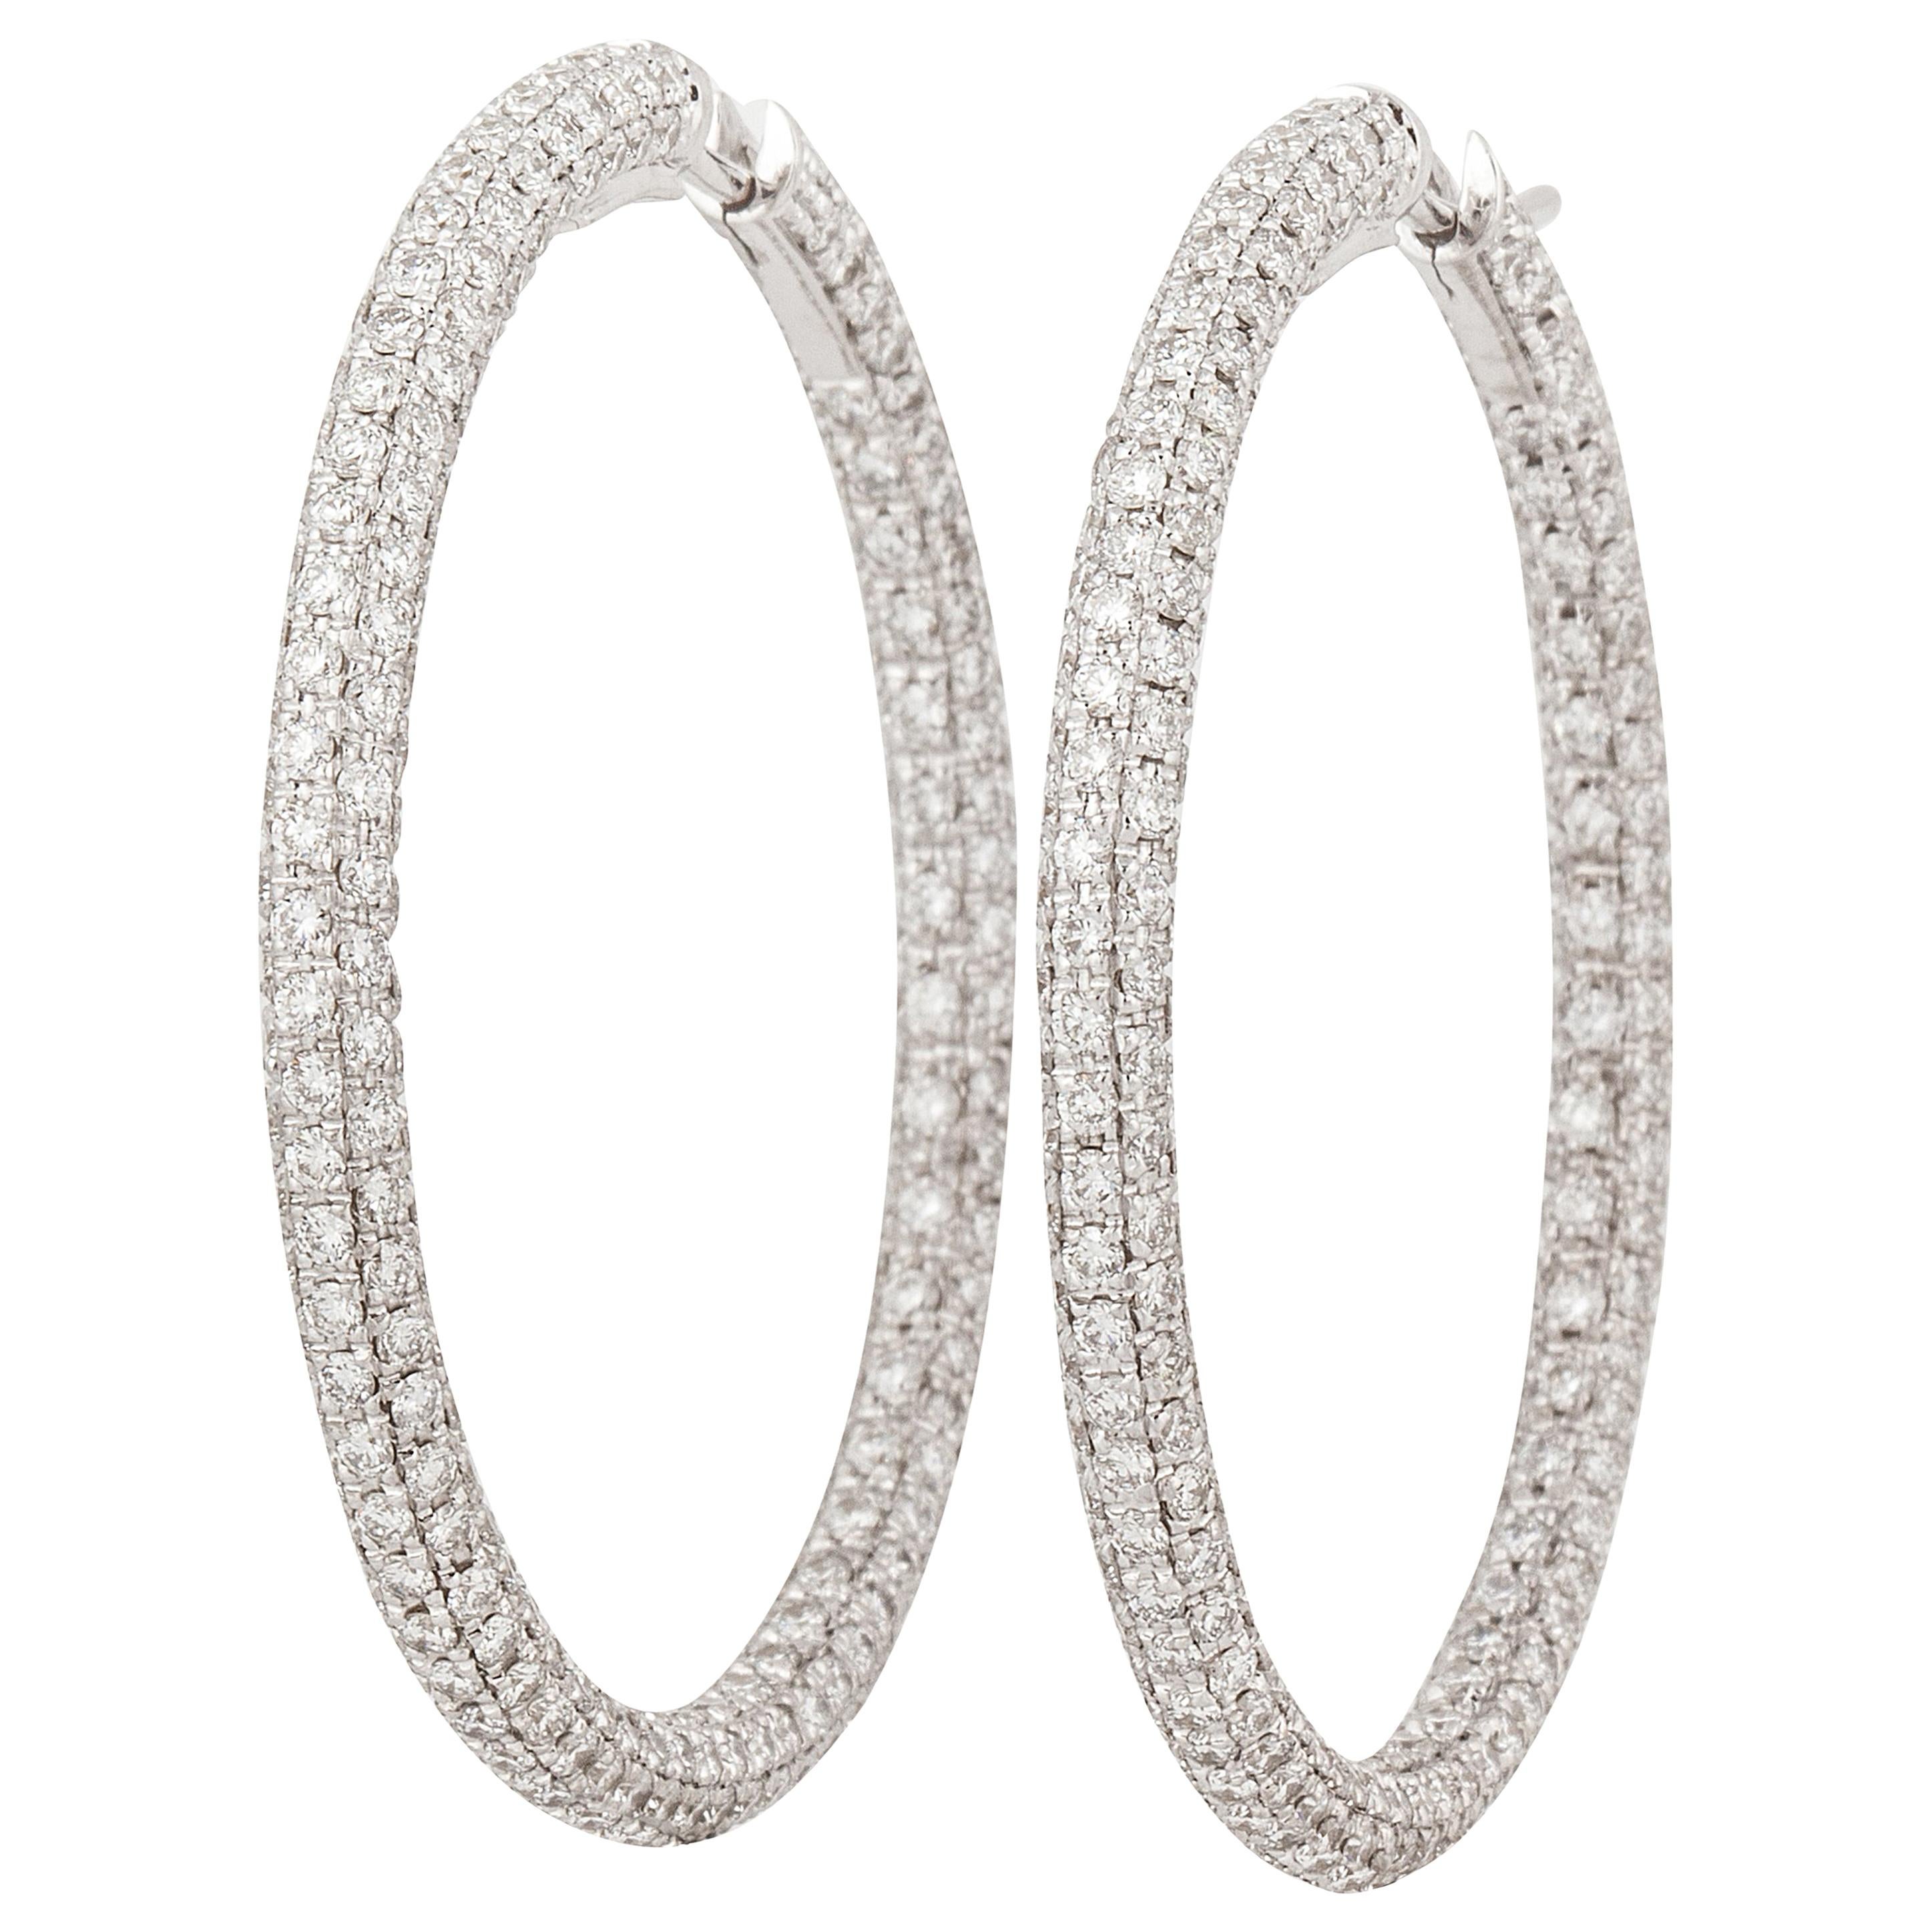 Garavelli Large Hoop Diamond Earrings in 18K White Gold